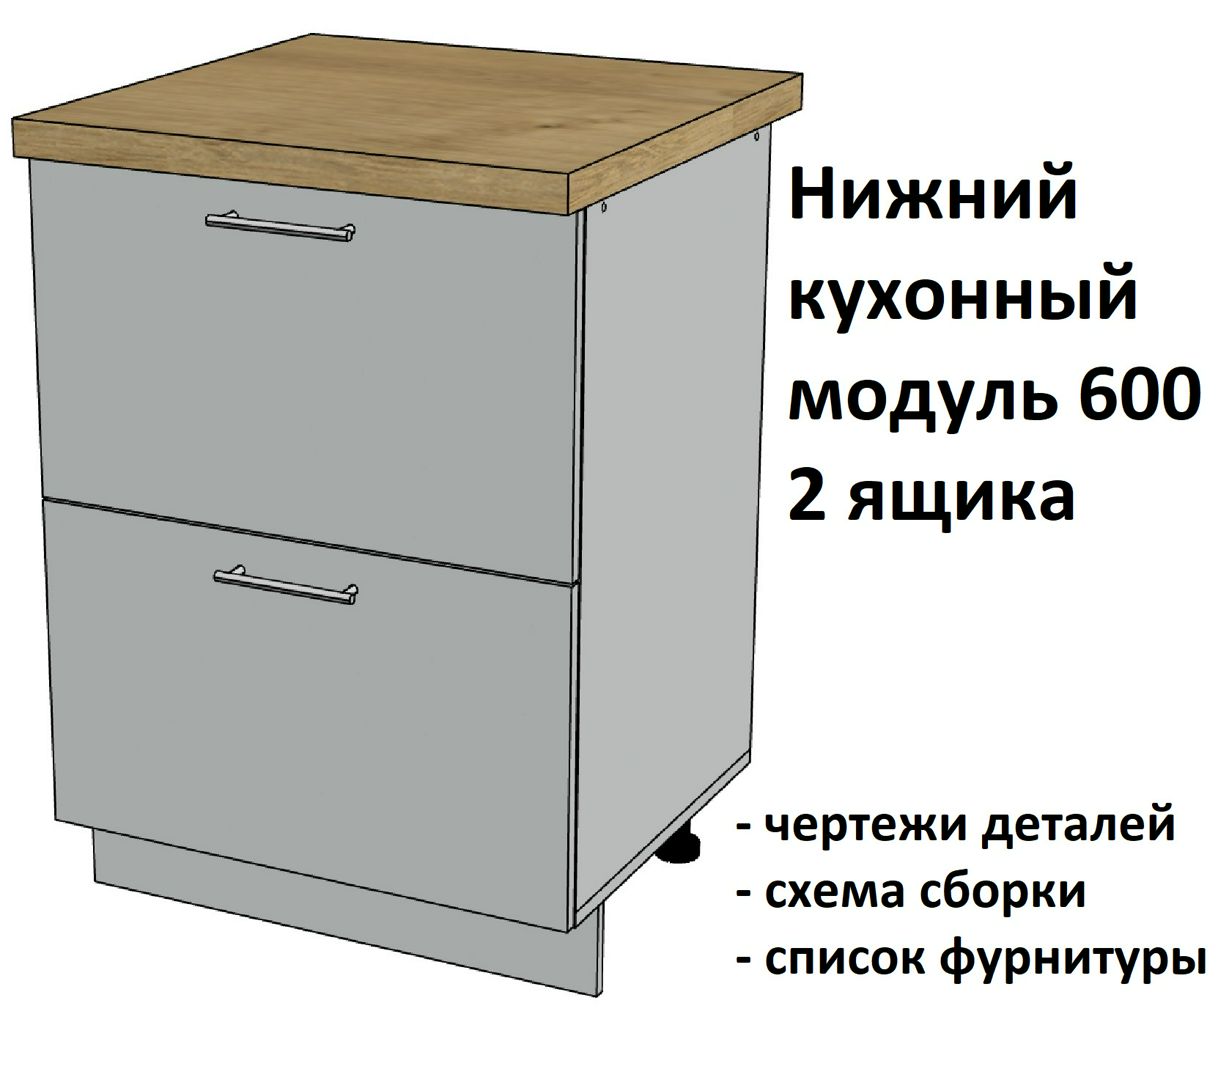 Нижний кухонный модуль 600, 2 ящика - Комплект чертежей для изготовления корпусной мебели